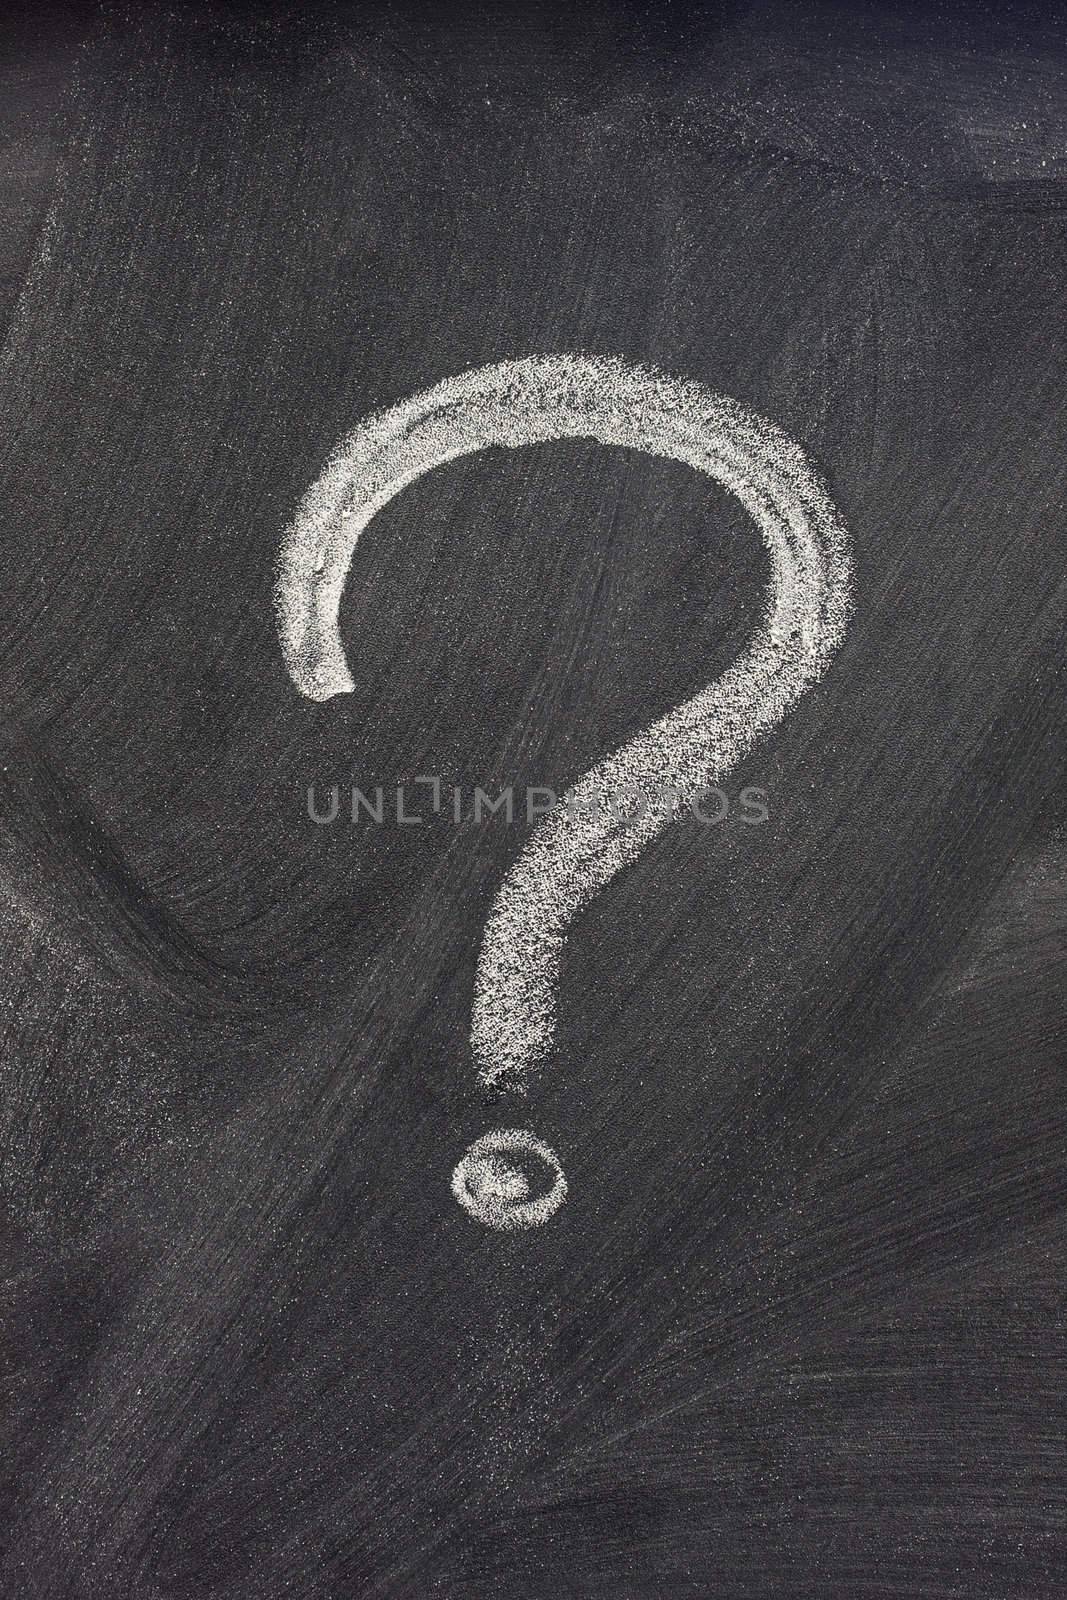 question mark on a blackboard by PixelsAway